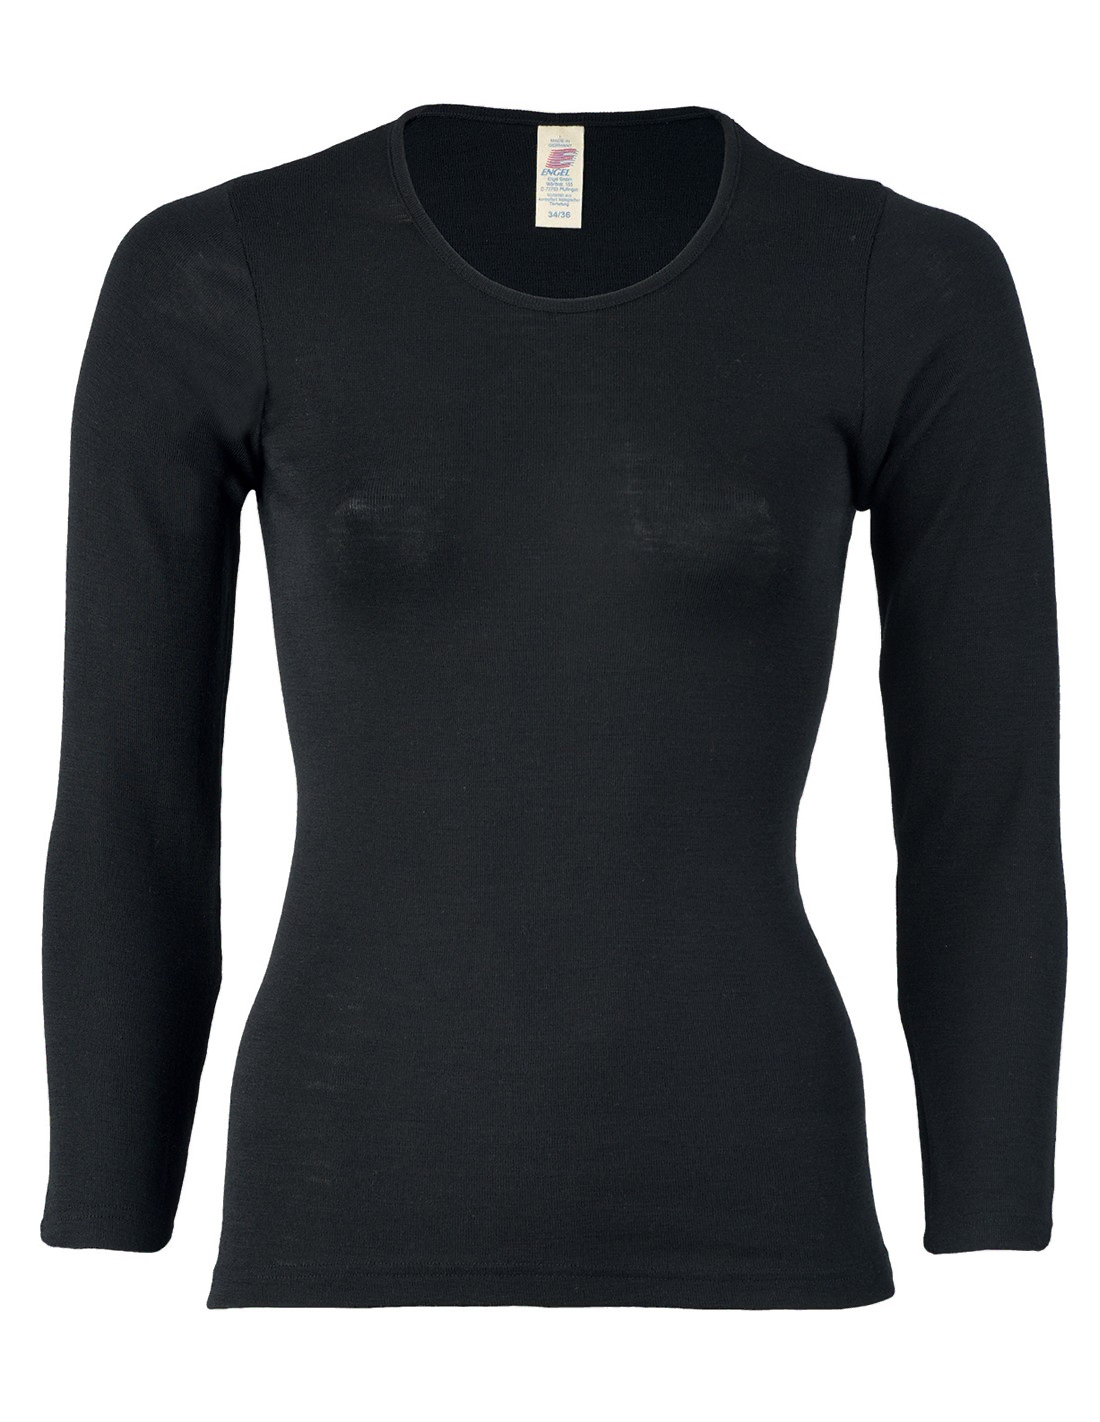 Image of Dames Shirt Lange Mouw Zijde Wol Engel Natur, Kleur Zwart, Maat 42/44 - Large